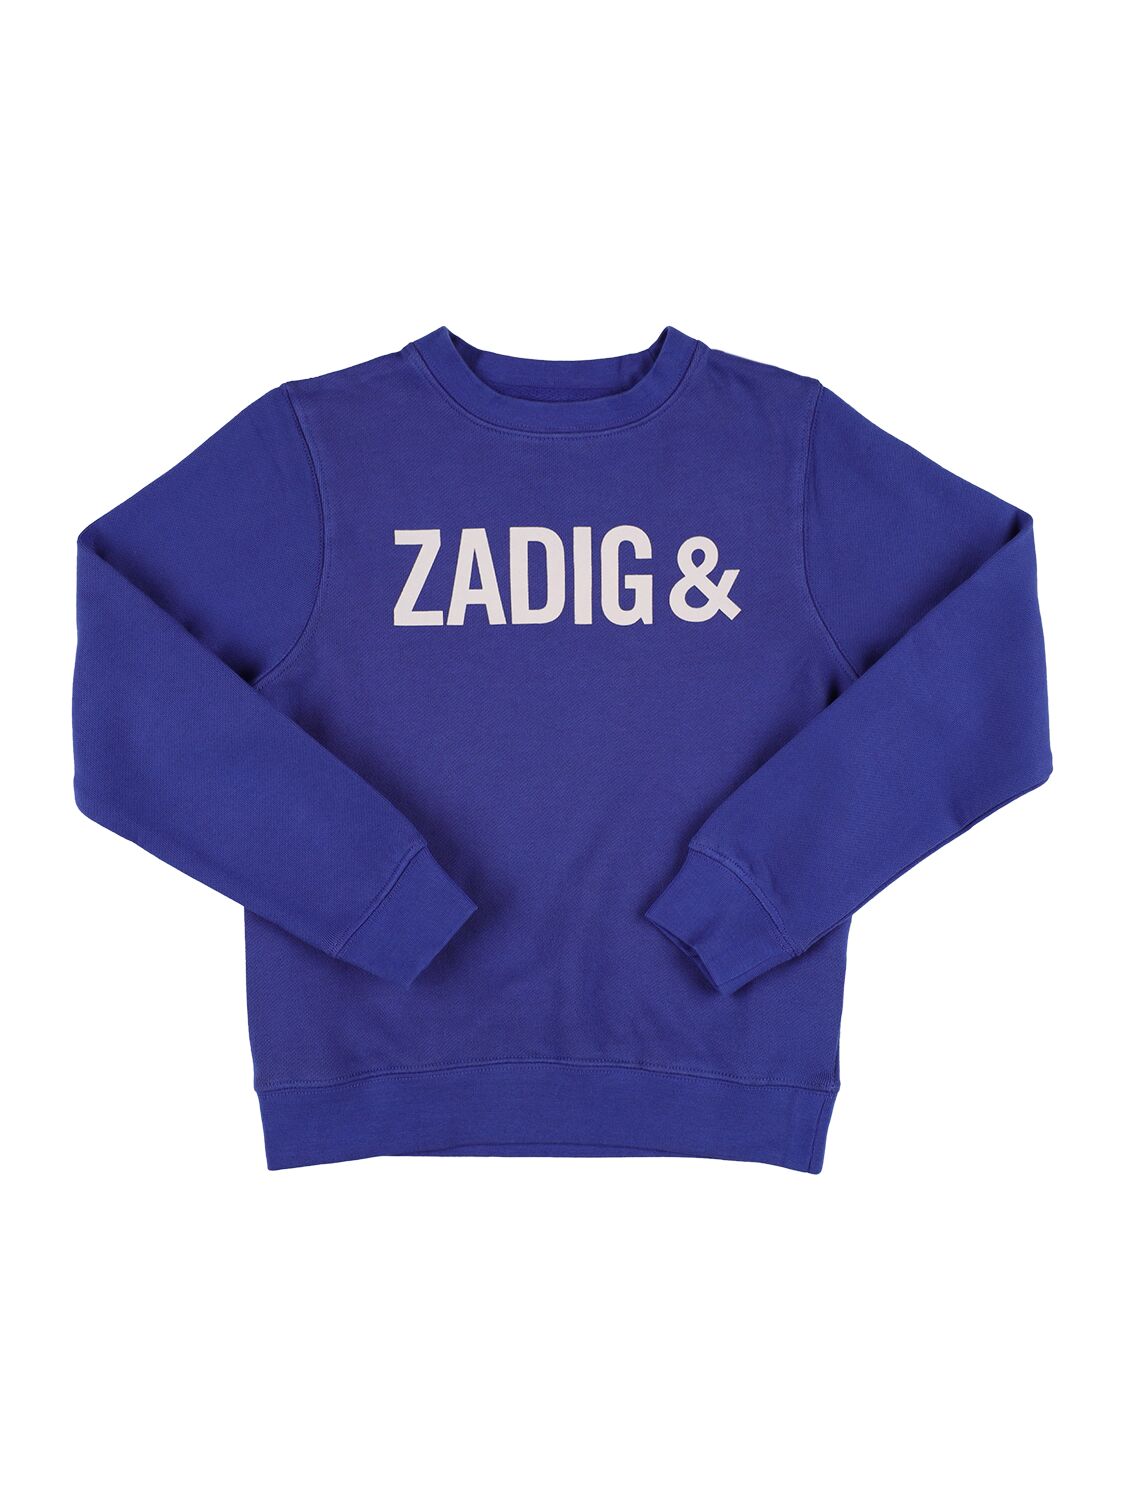 Zadig & Voltaire Kids' Cotton Blend Crewneck Sweatshirt In White